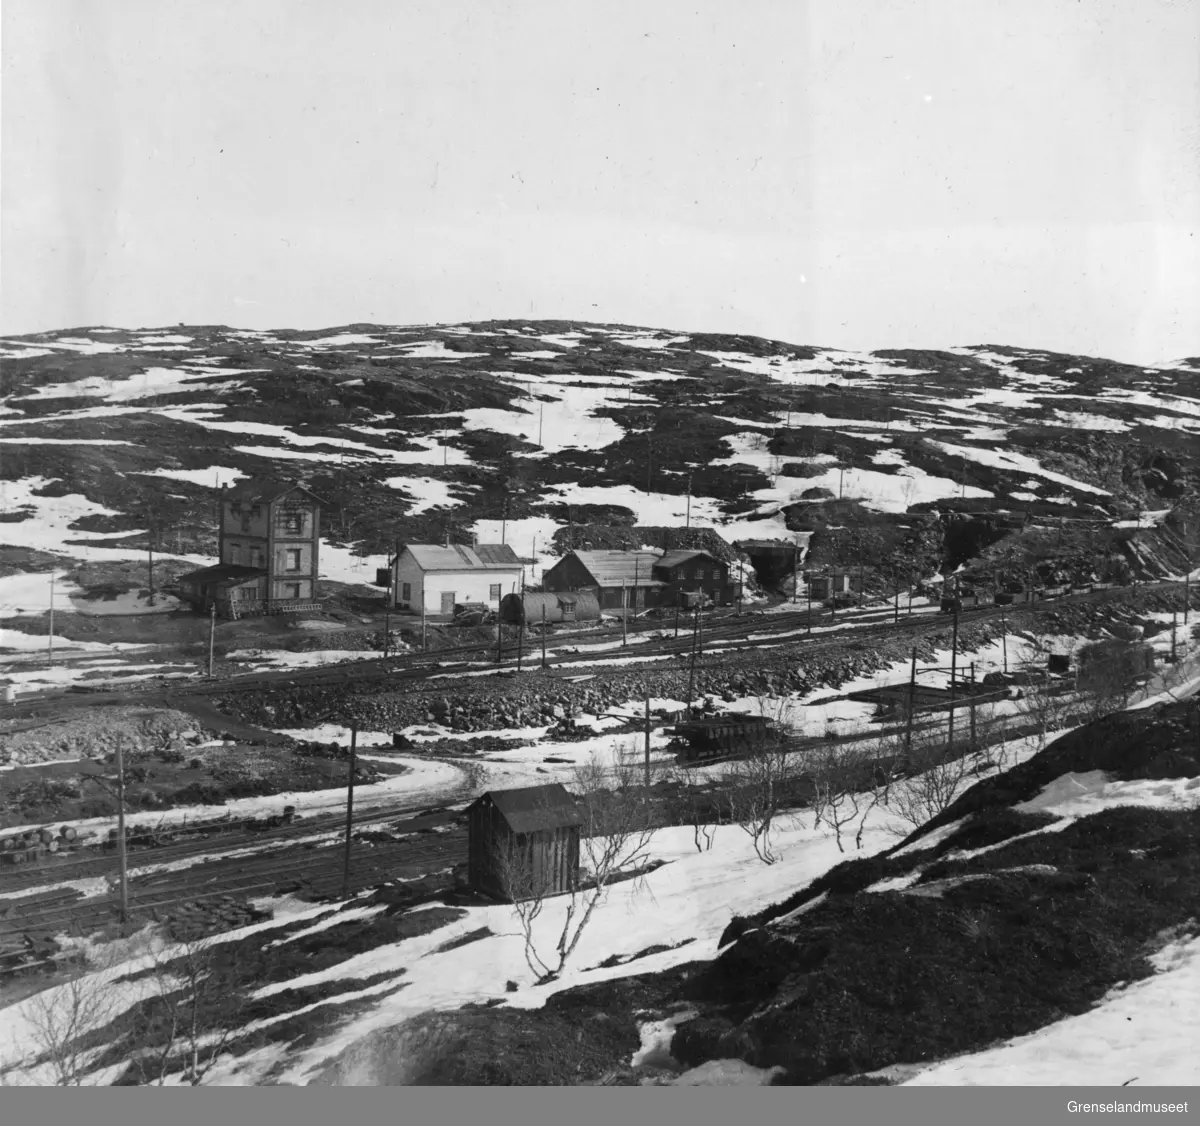 Gruveområde i Bjørnevatn, vi ser transformatorstasjonen, rørbua/badehuset og åpningen til tunnelen der 3000 mennesker oppholdt seg de siste dagene av krigen, 3. mai 1946.